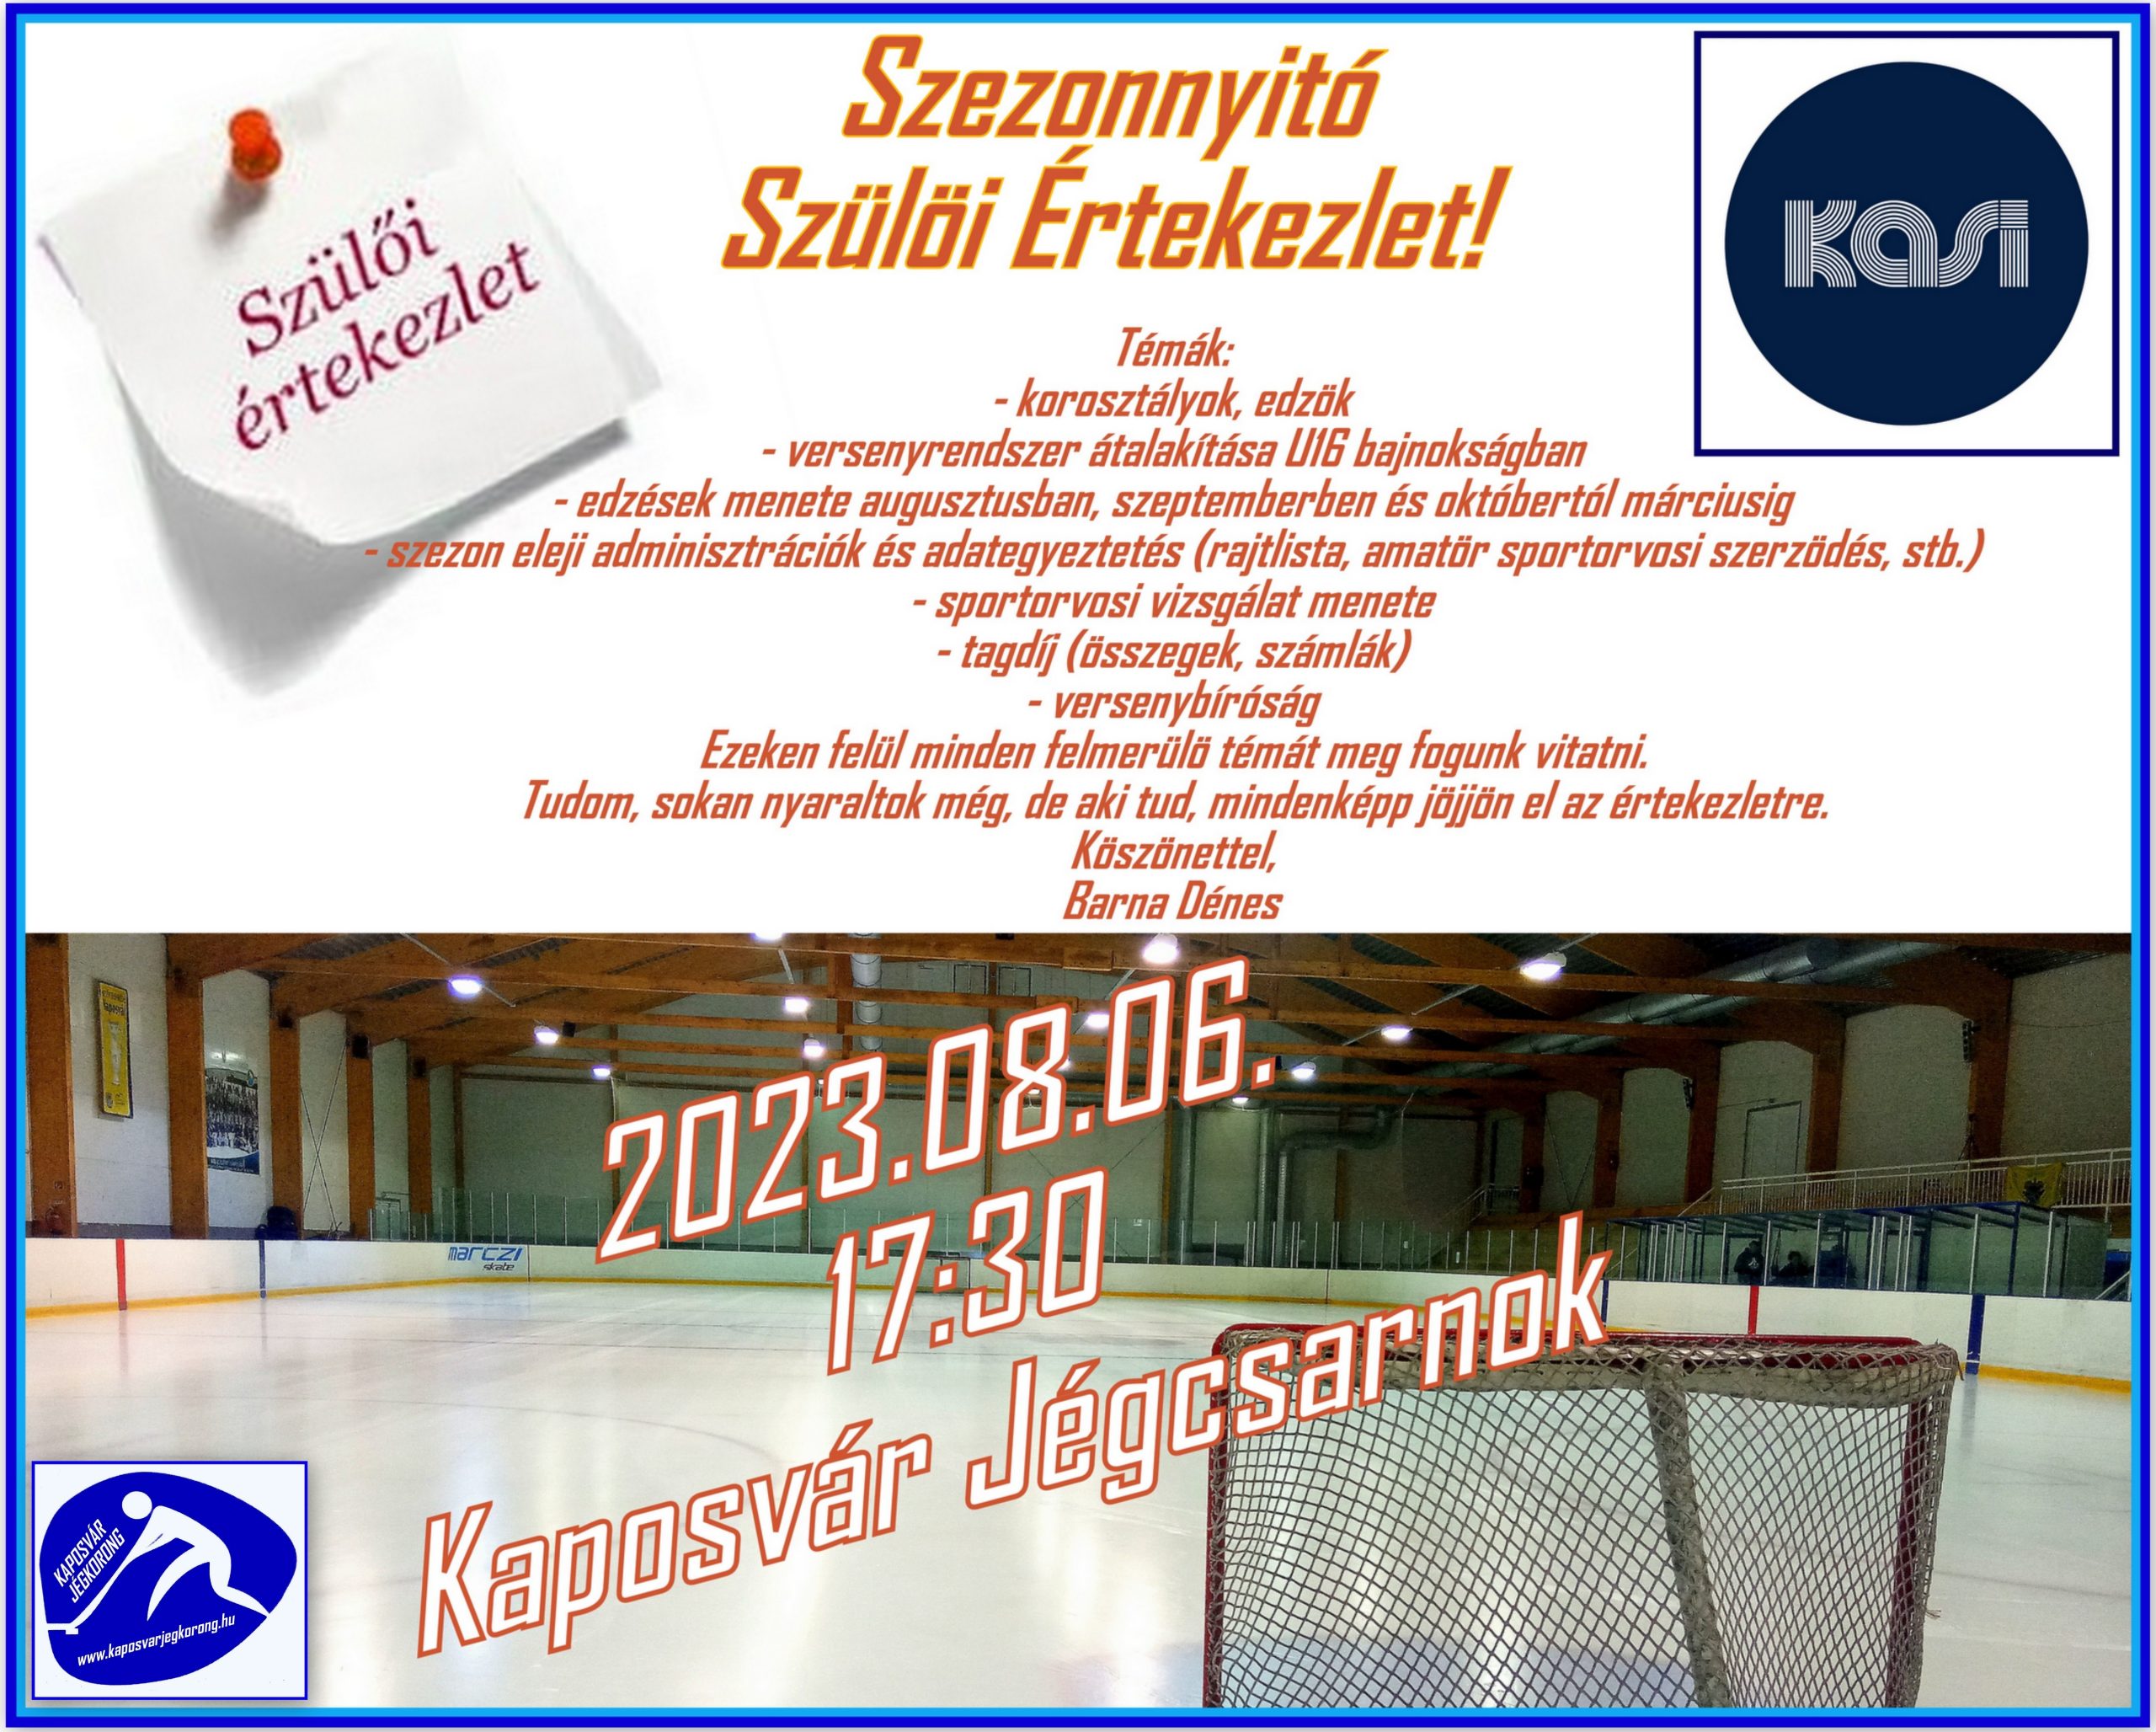 You are currently viewing Szezonnyitó Szülői Értekezlet! 2023.08.06. 17:30. Kaposvár Jégcsarnok